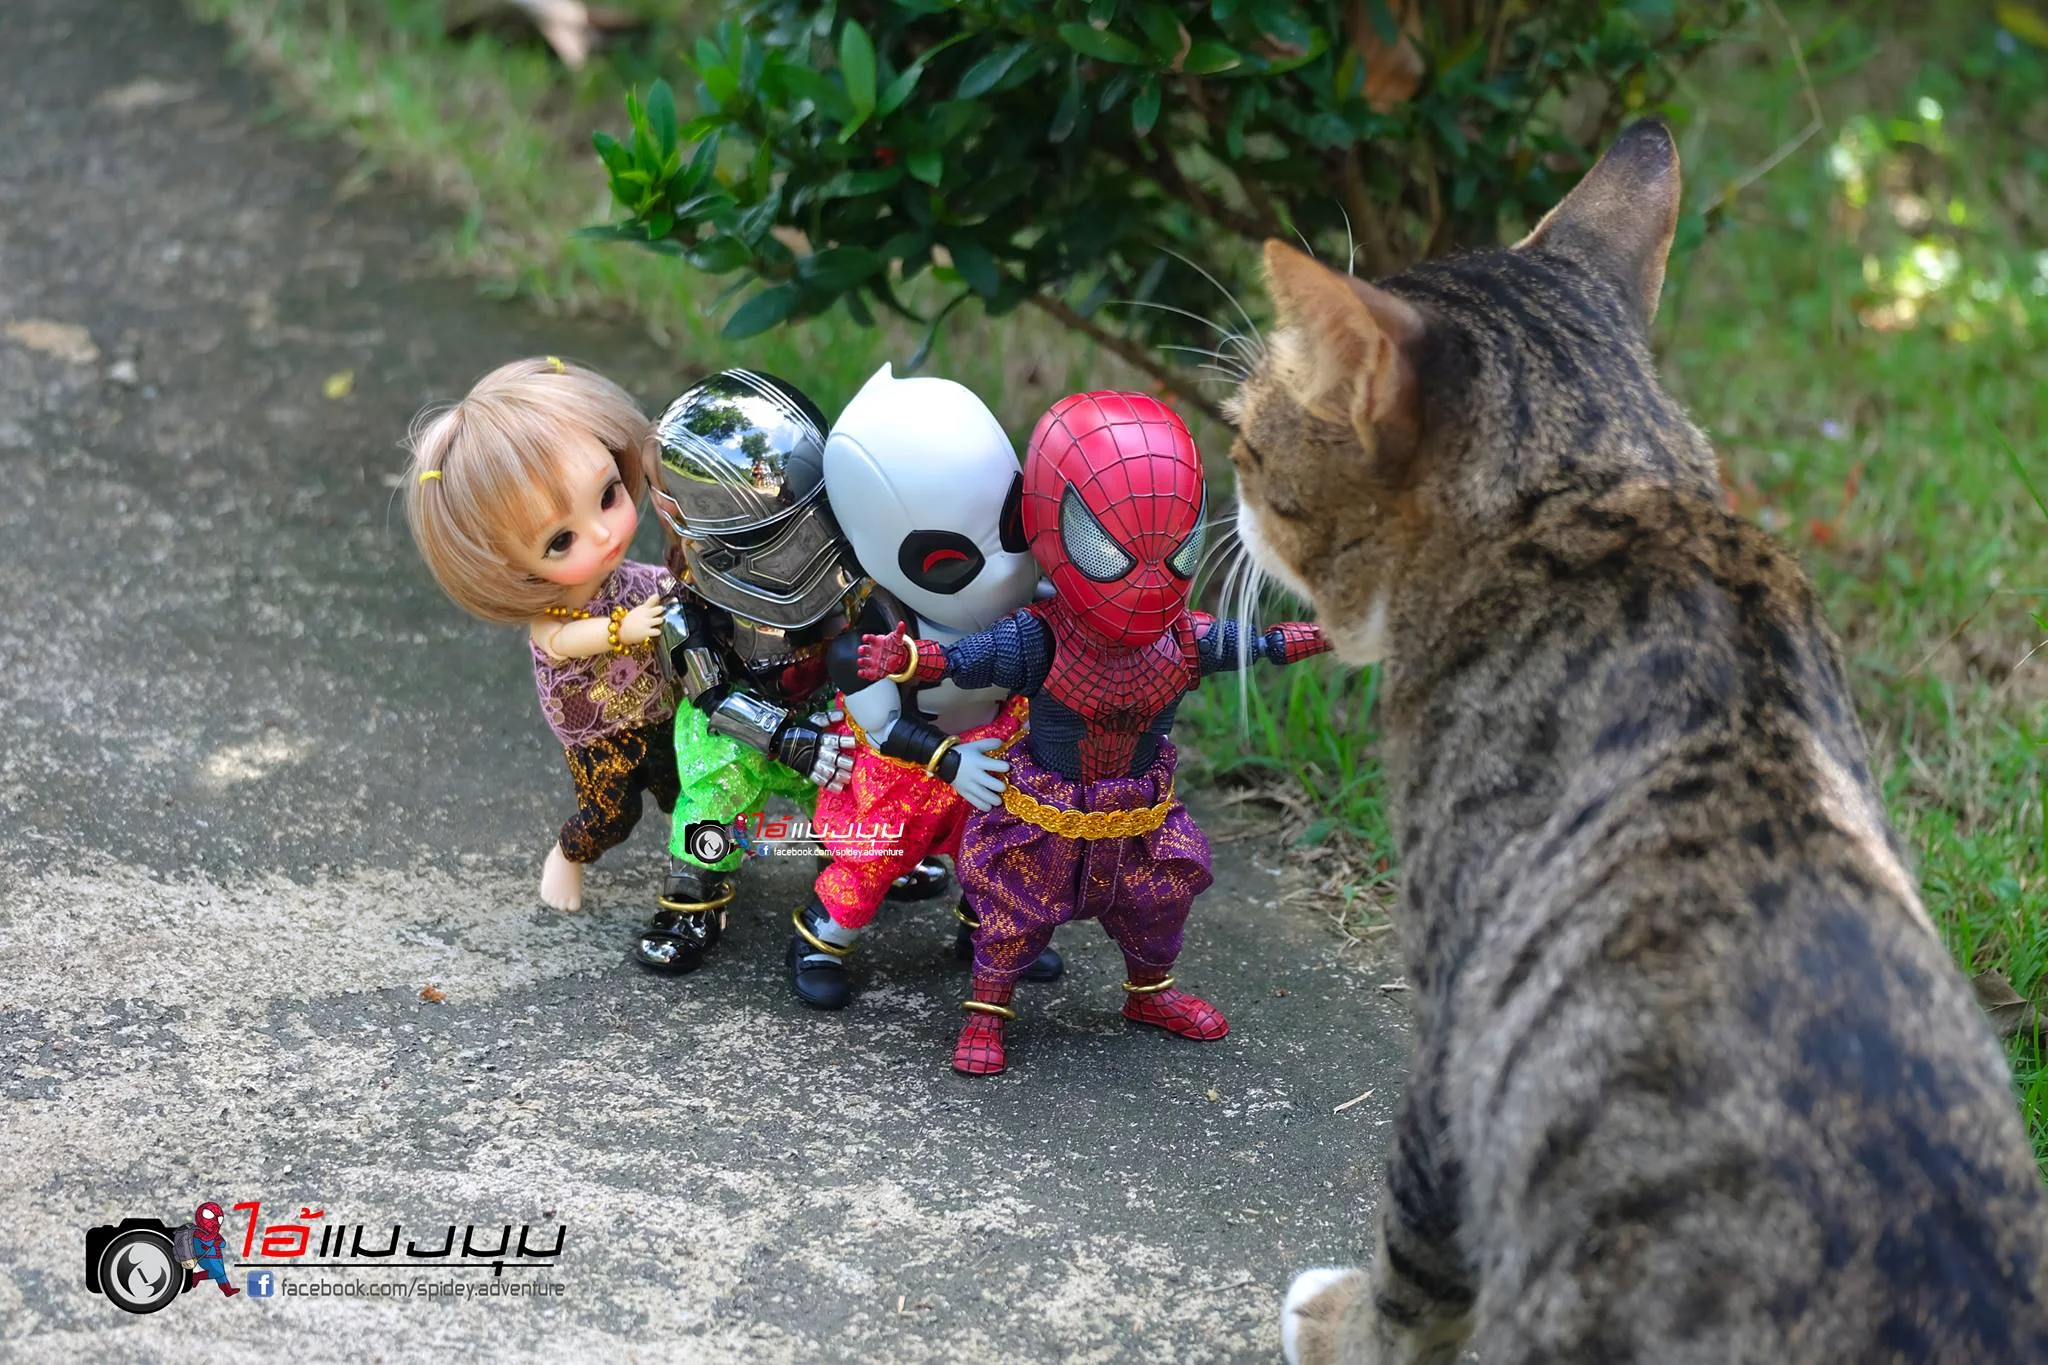 Художник добавил к фото с котиками изображение Человека-паука – это выглядит очень смешно - фото 459366